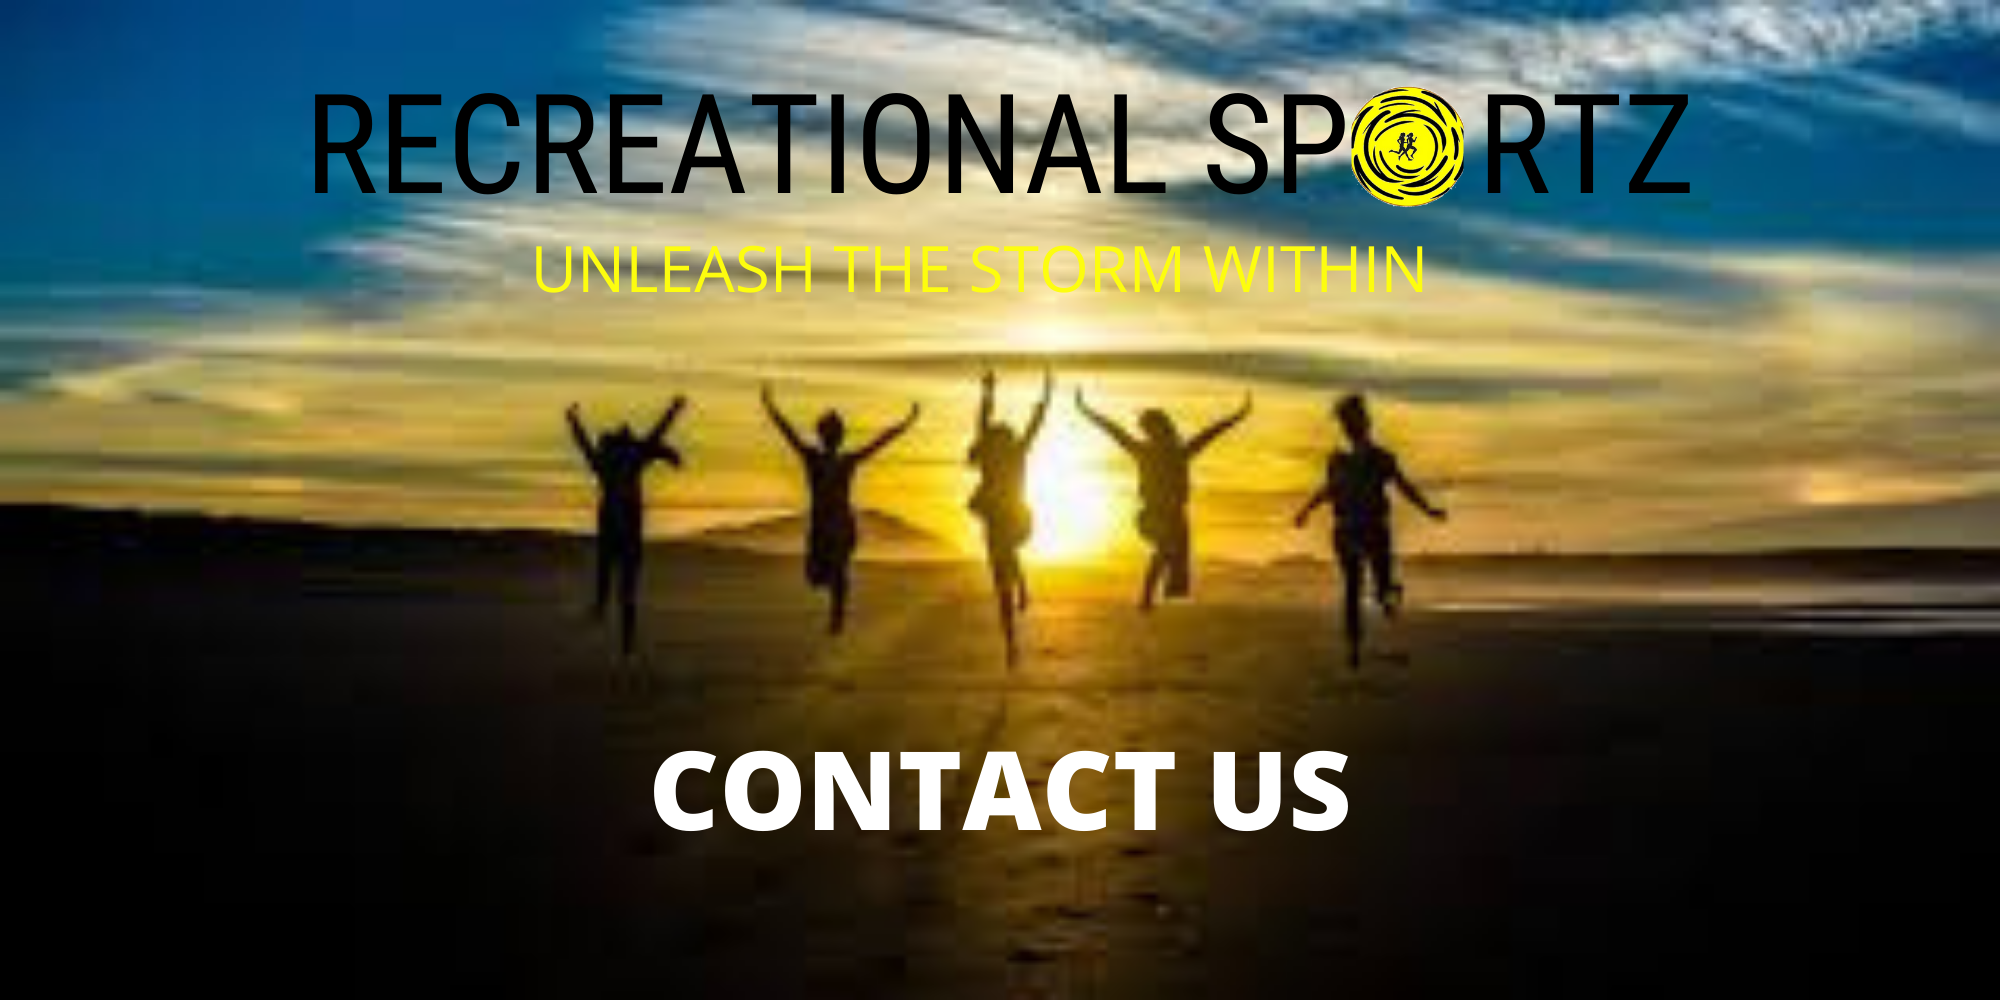 www.recreationalsportz.com/contact-us/